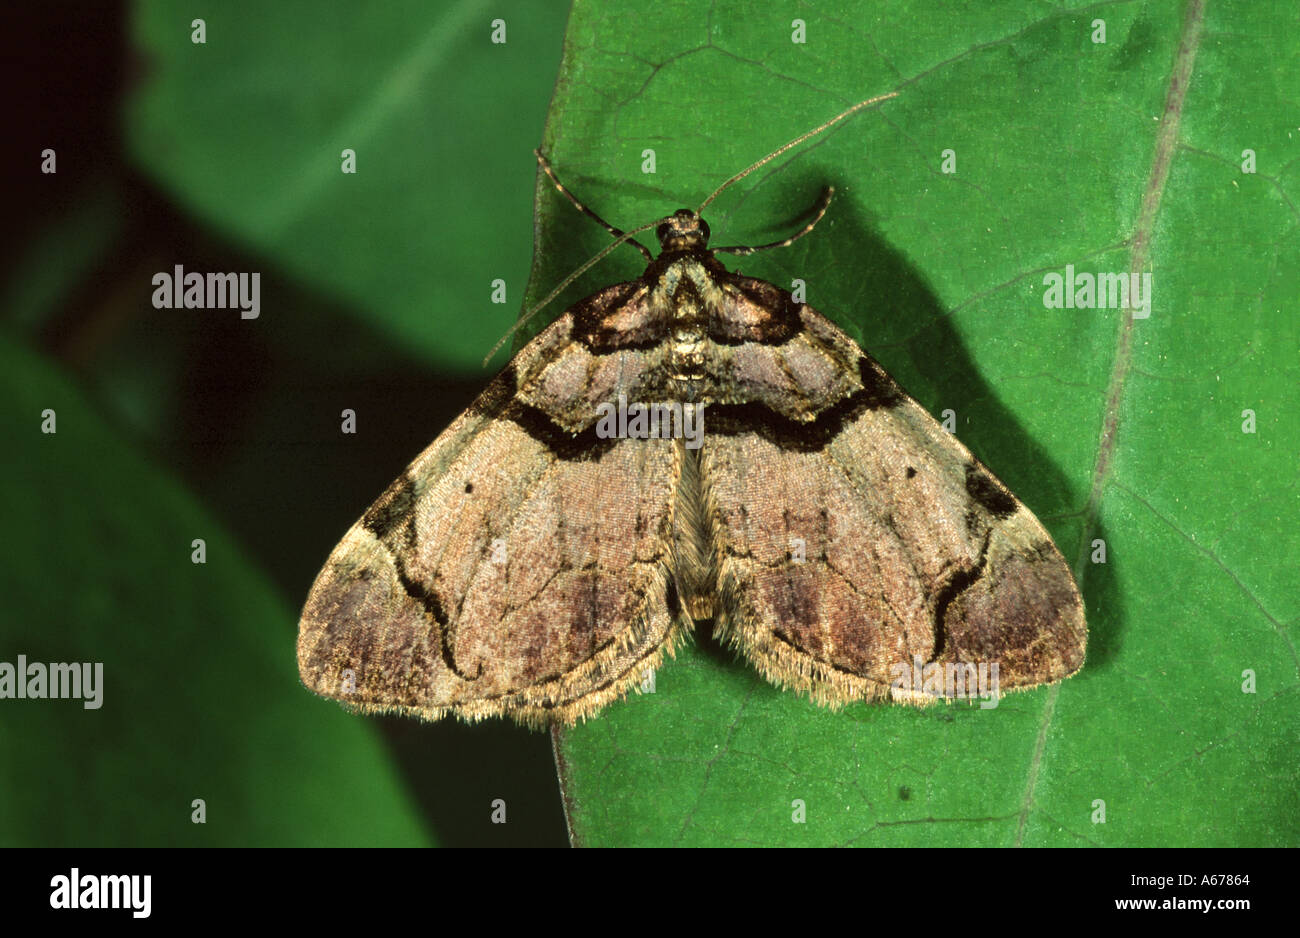 The Streamer moth Anticlea derivata Stock Photo